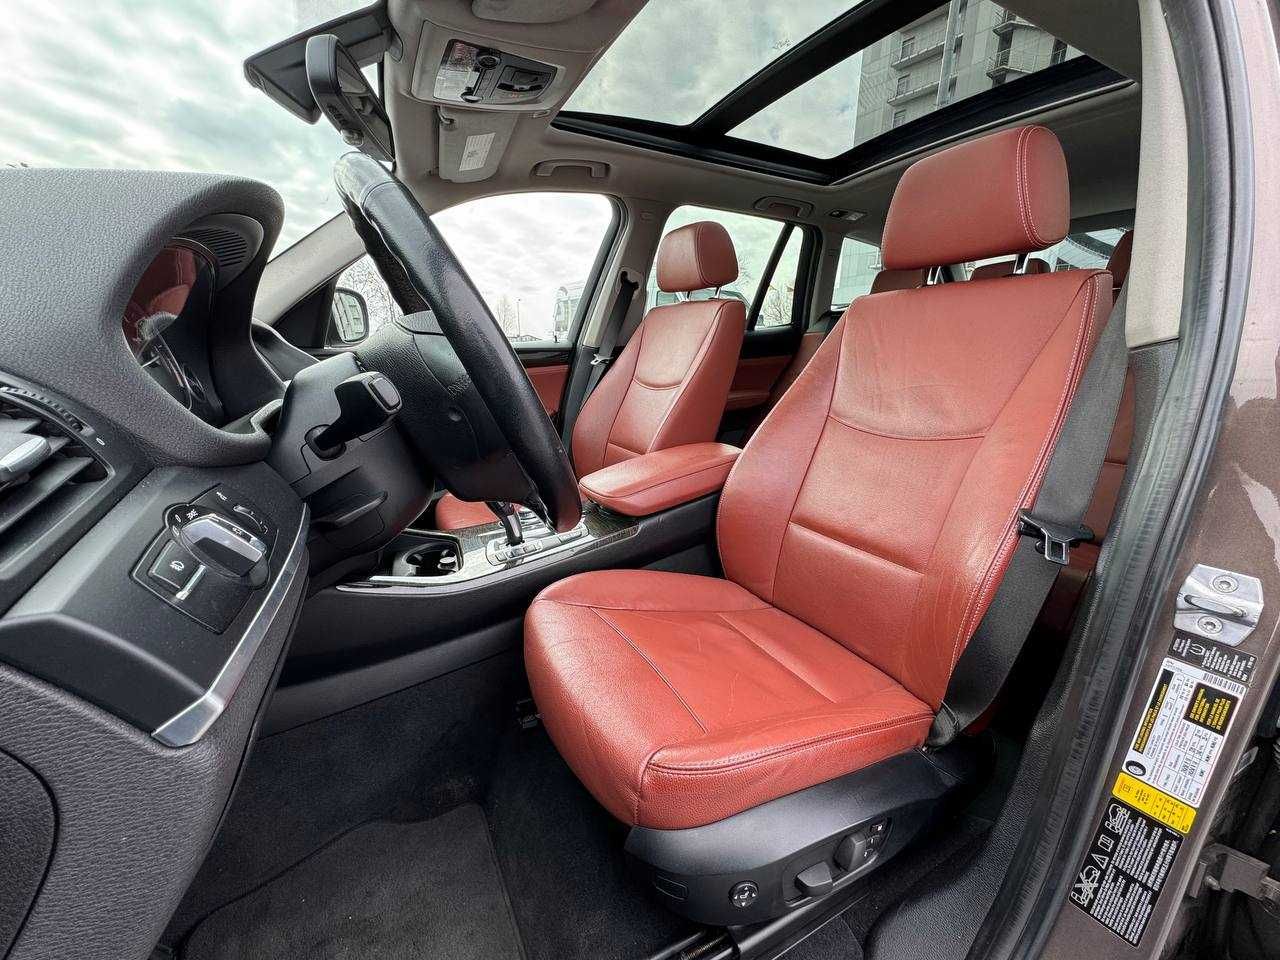 BMW X3 2013 рік, 2.0 бензин, автомат, повний привід